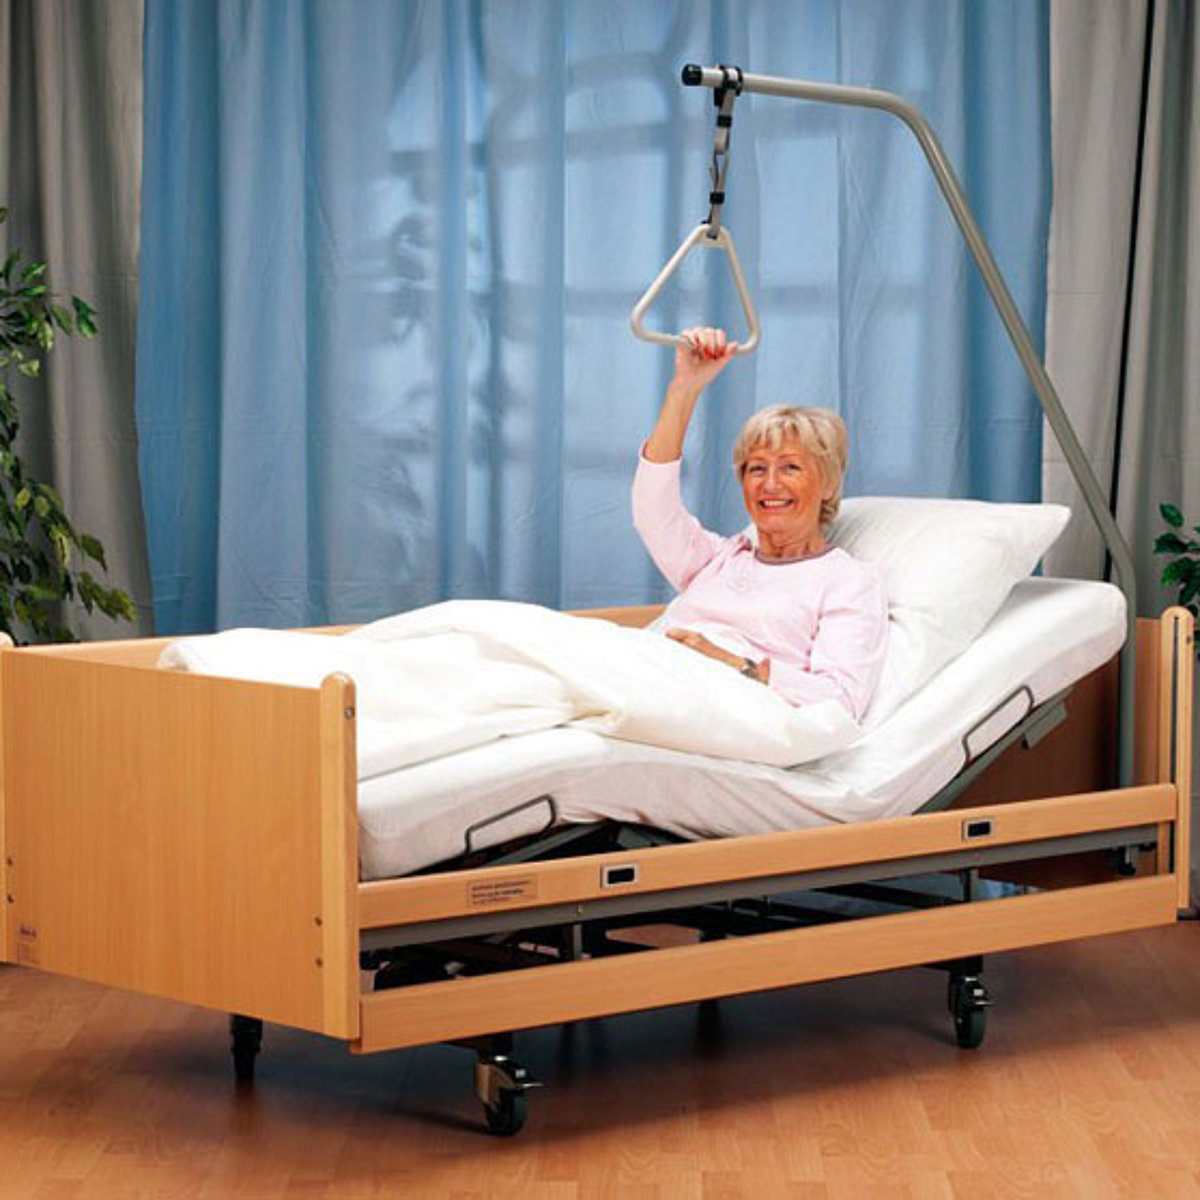 Eine Frau sitzt in einem Pflegebett und lächelt in die Kamera.